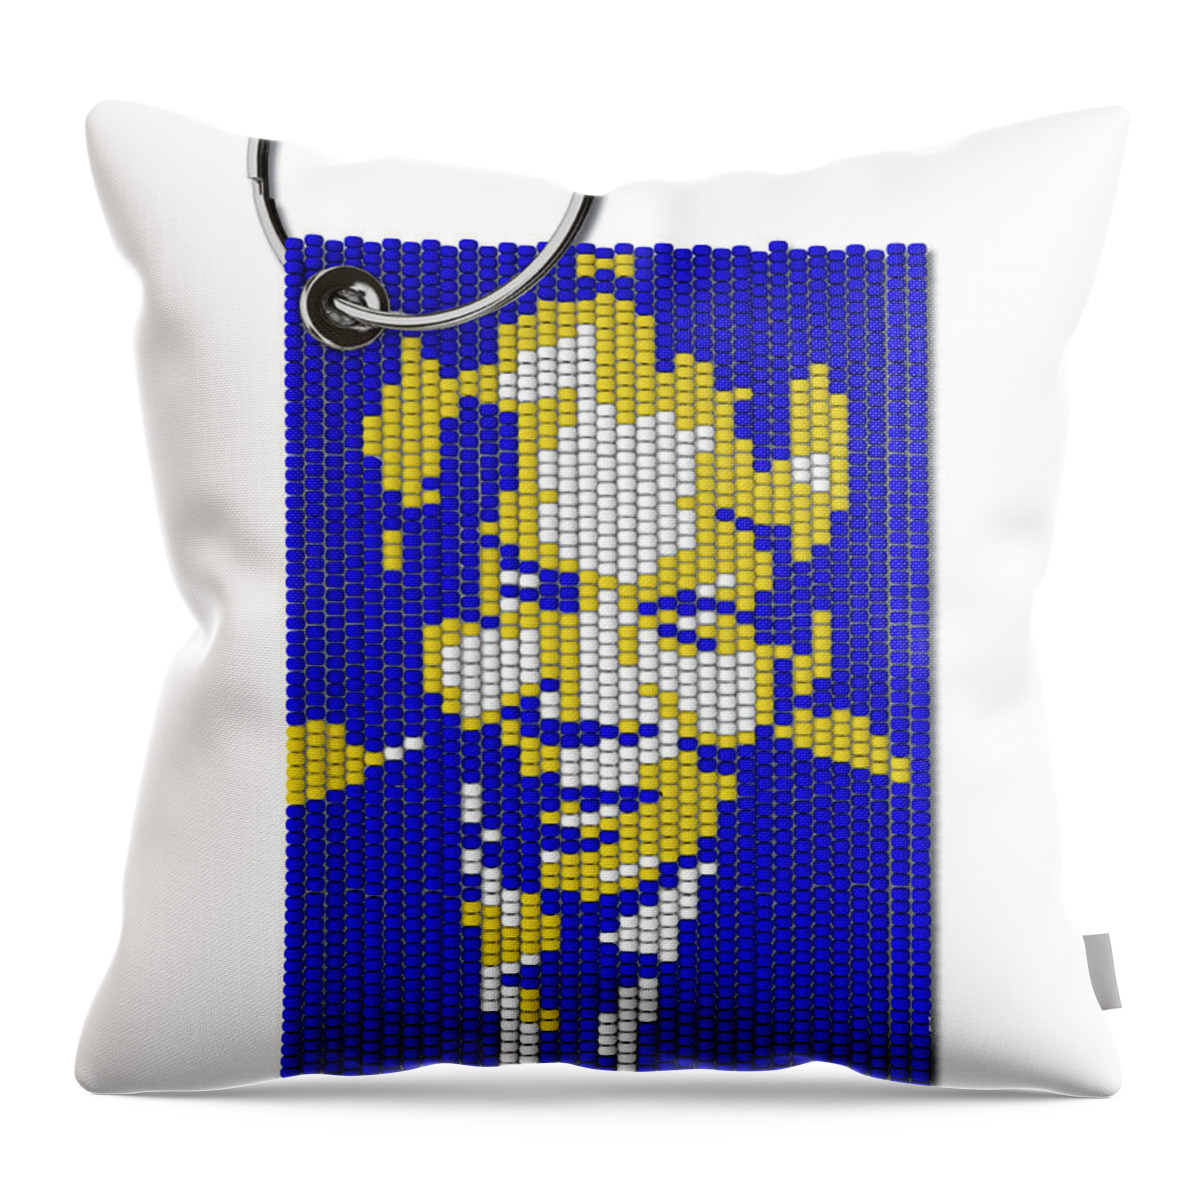 Nelson Mandela Throw Pillow featuring the digital art Zulu Bead Keyring #16 by Allan Swart